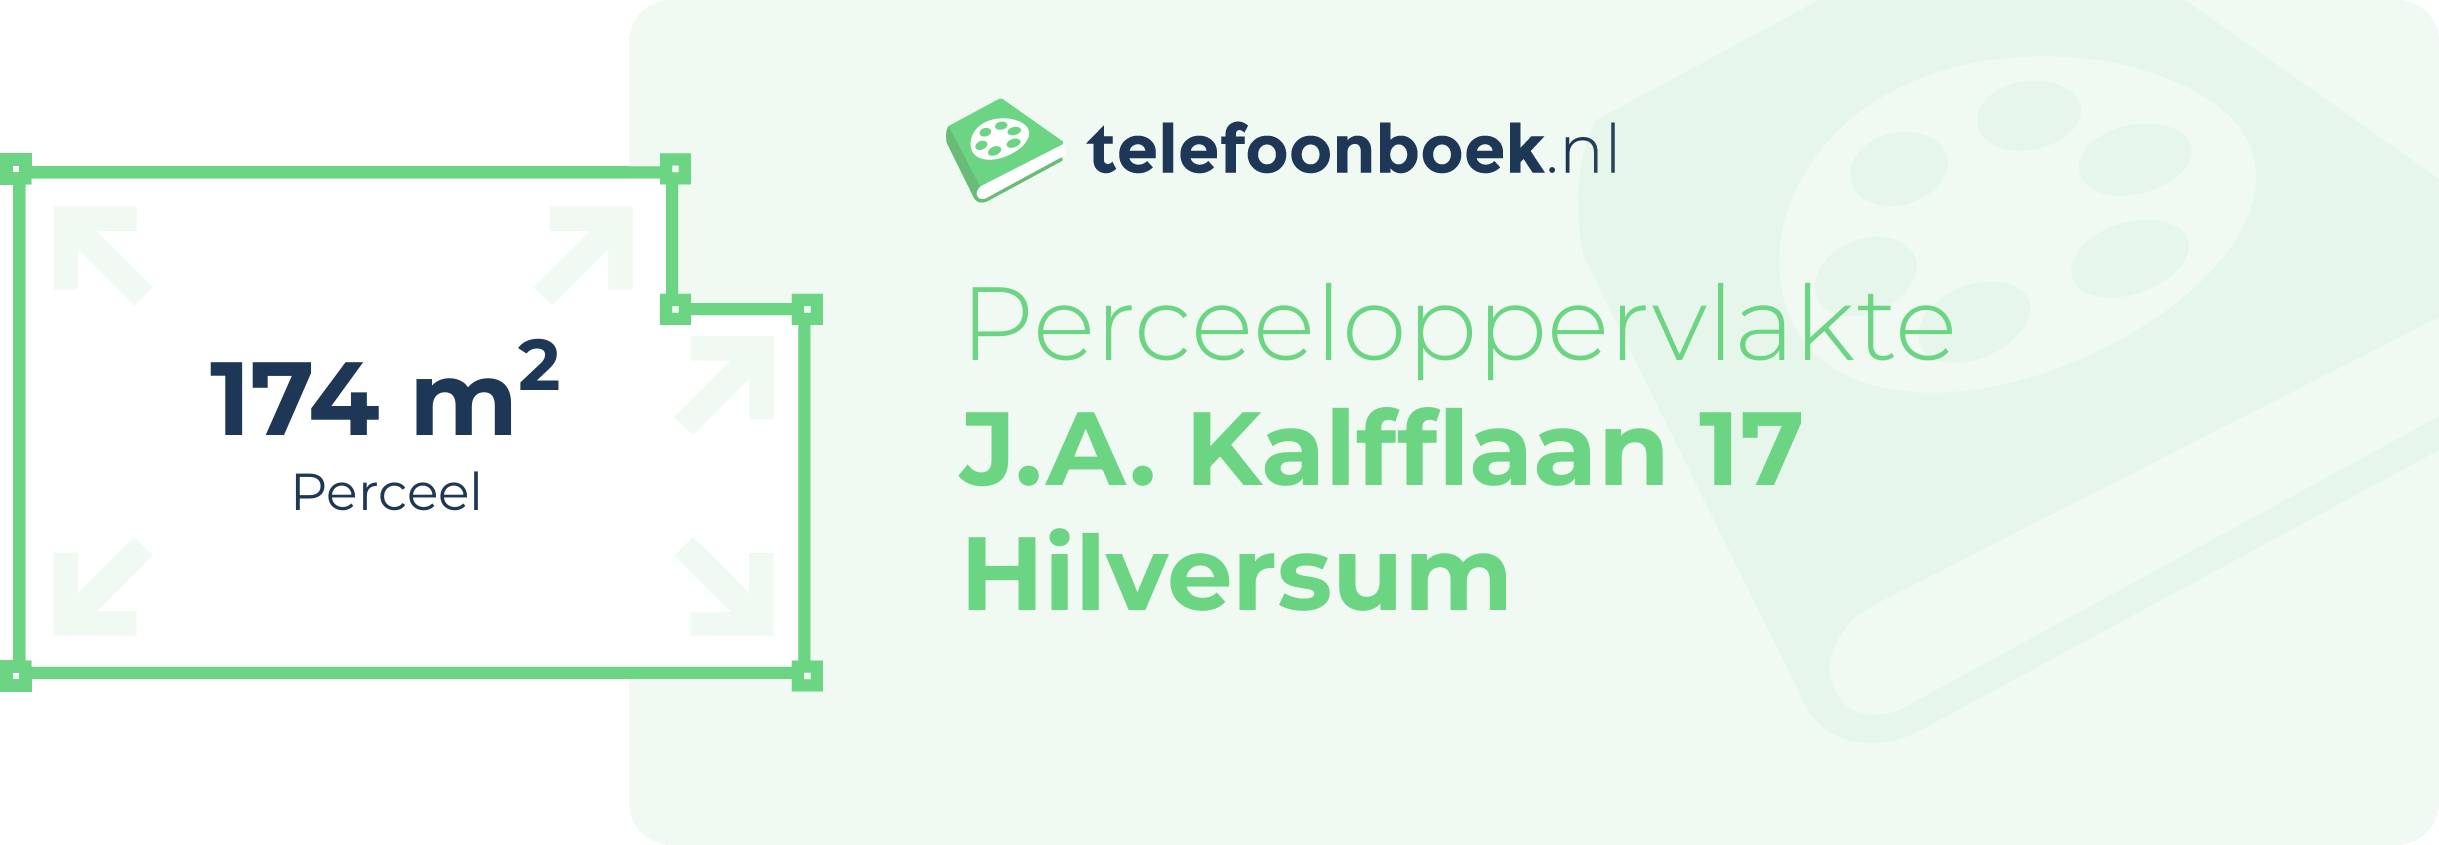 Perceeloppervlakte J.A. Kalfflaan 17 Hilversum